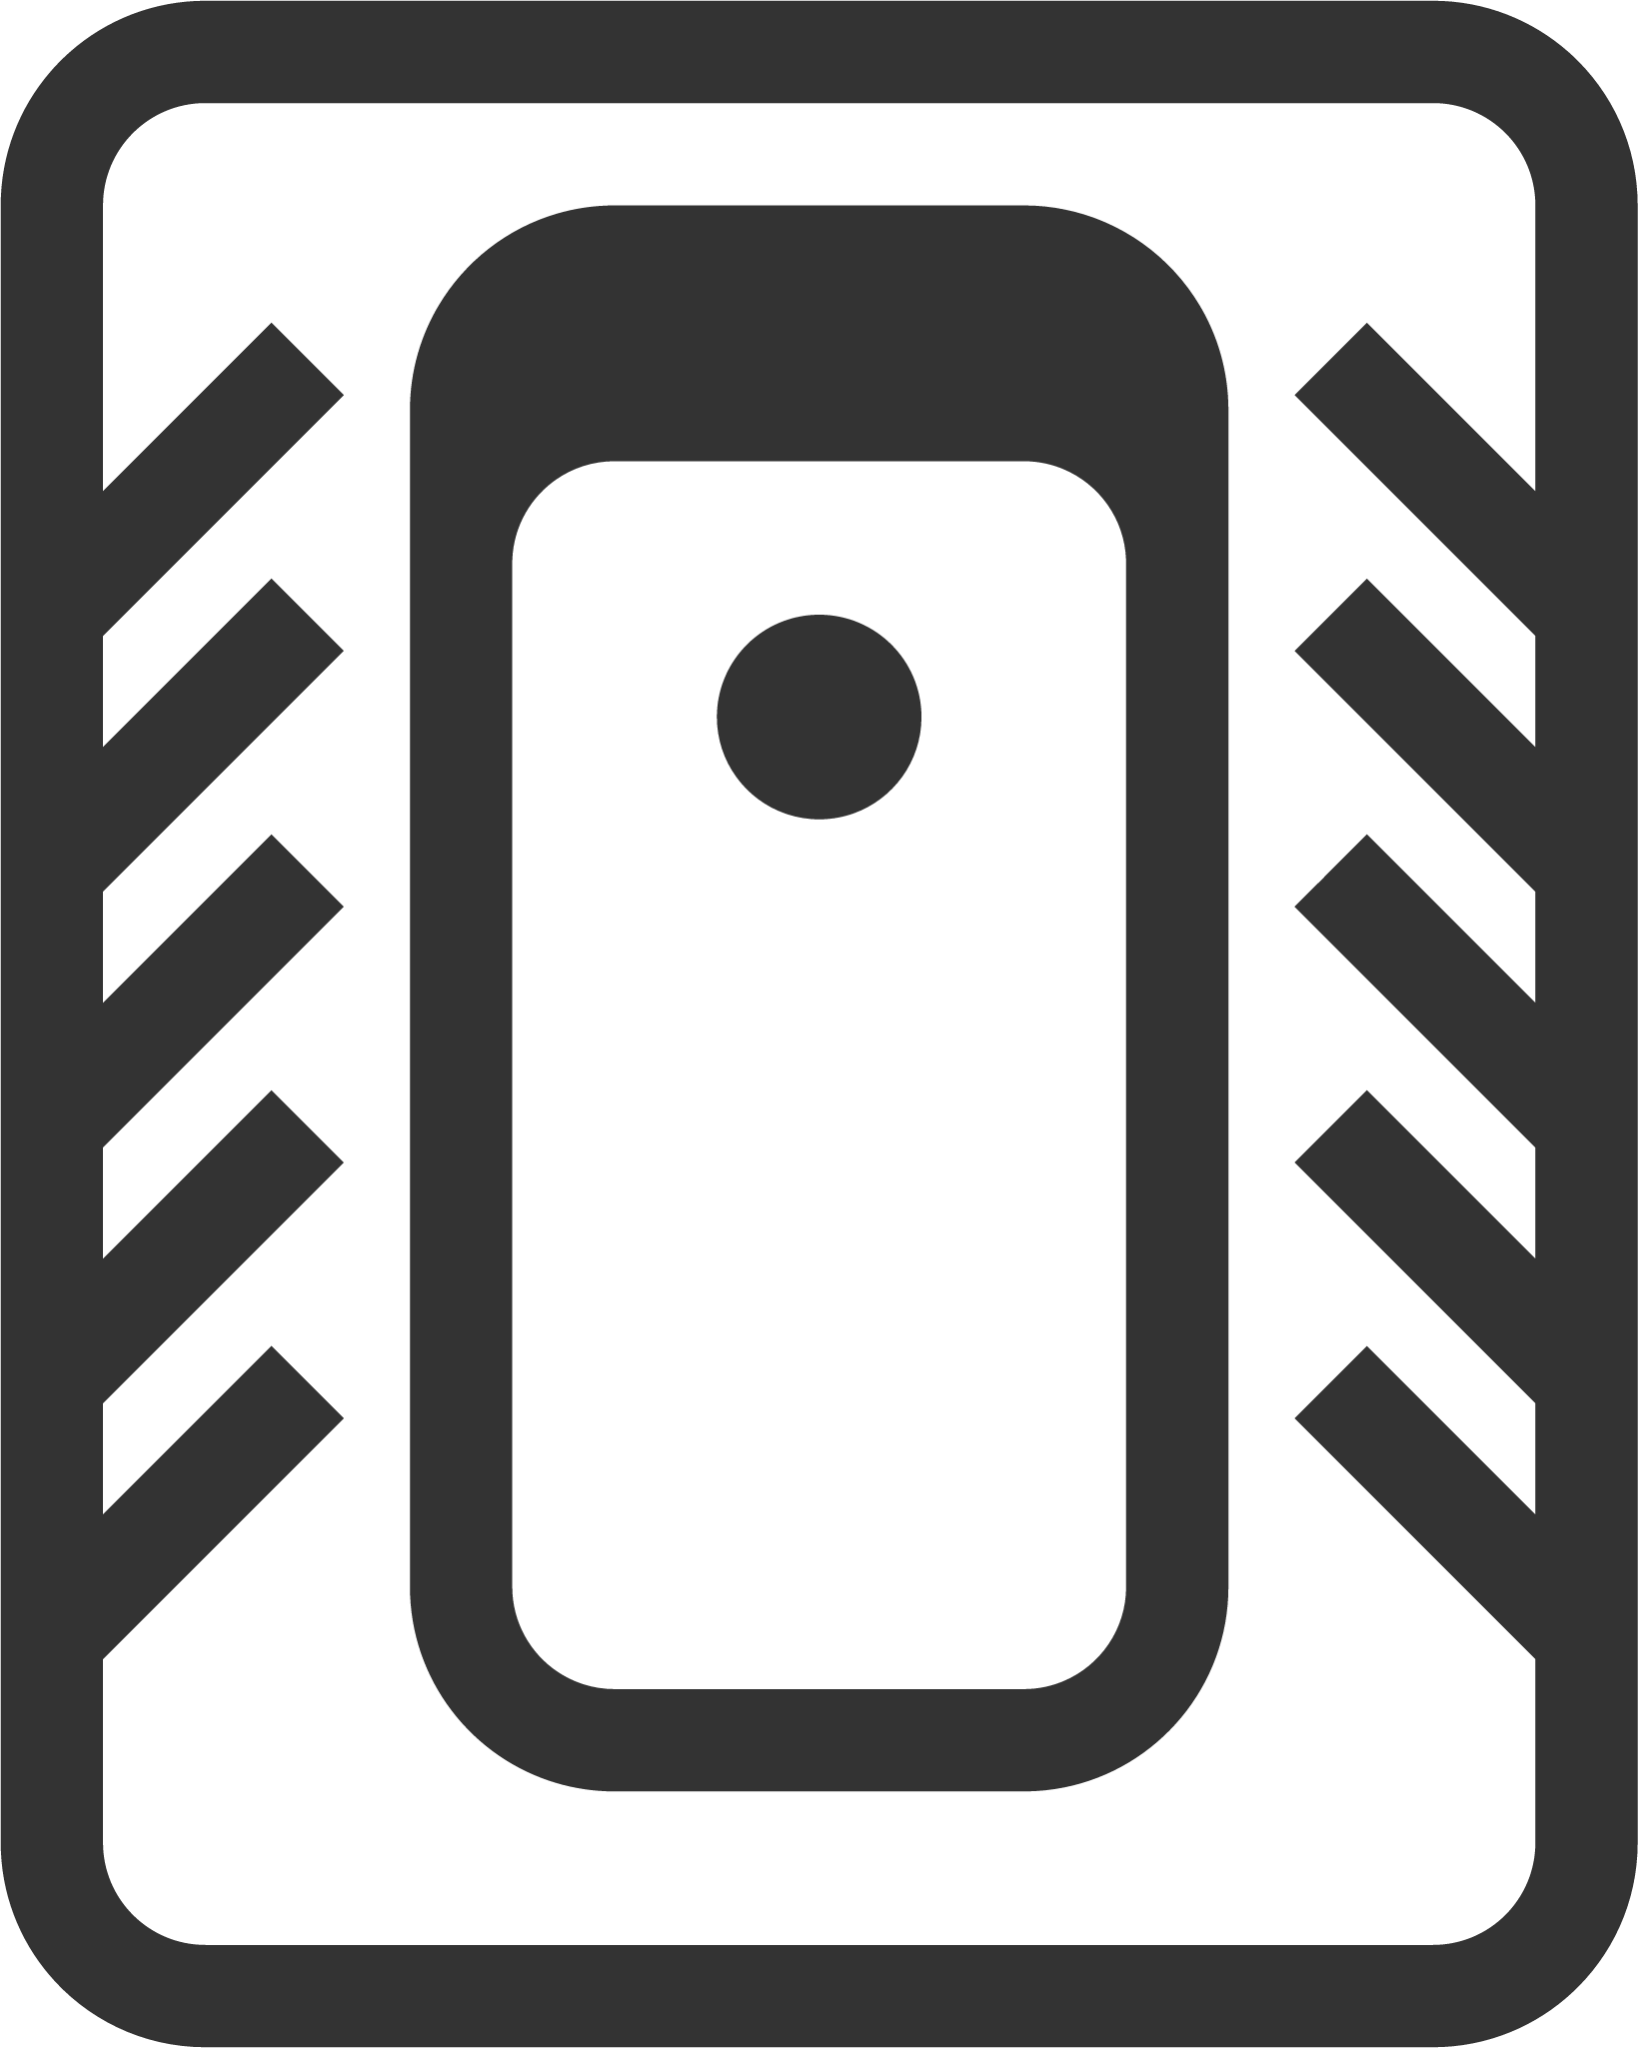 Outhouse icon